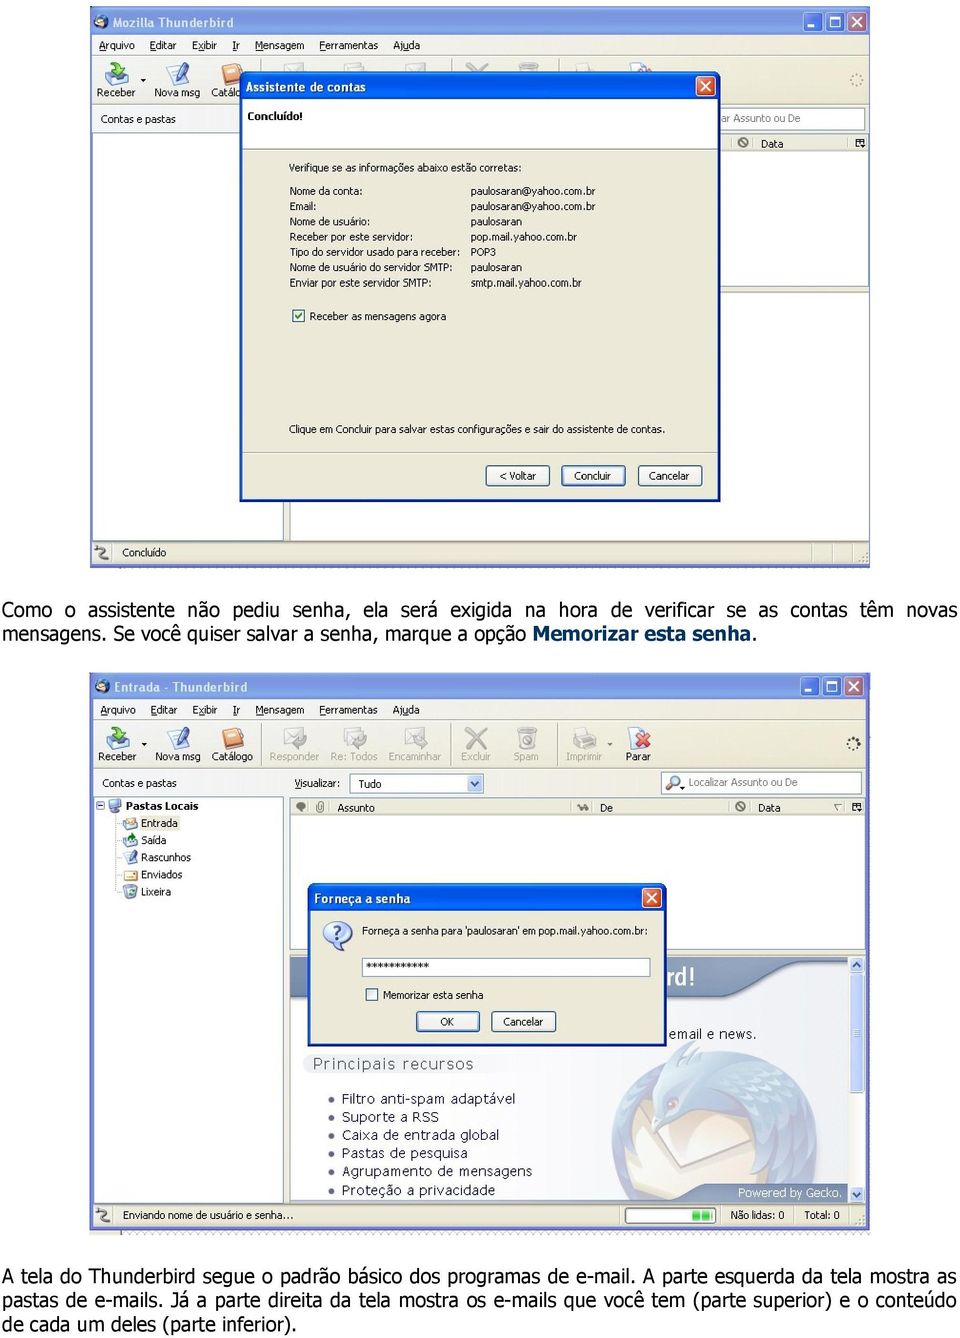 A tela do Thunderbird segue o padrão básico dos programas de e-mail.